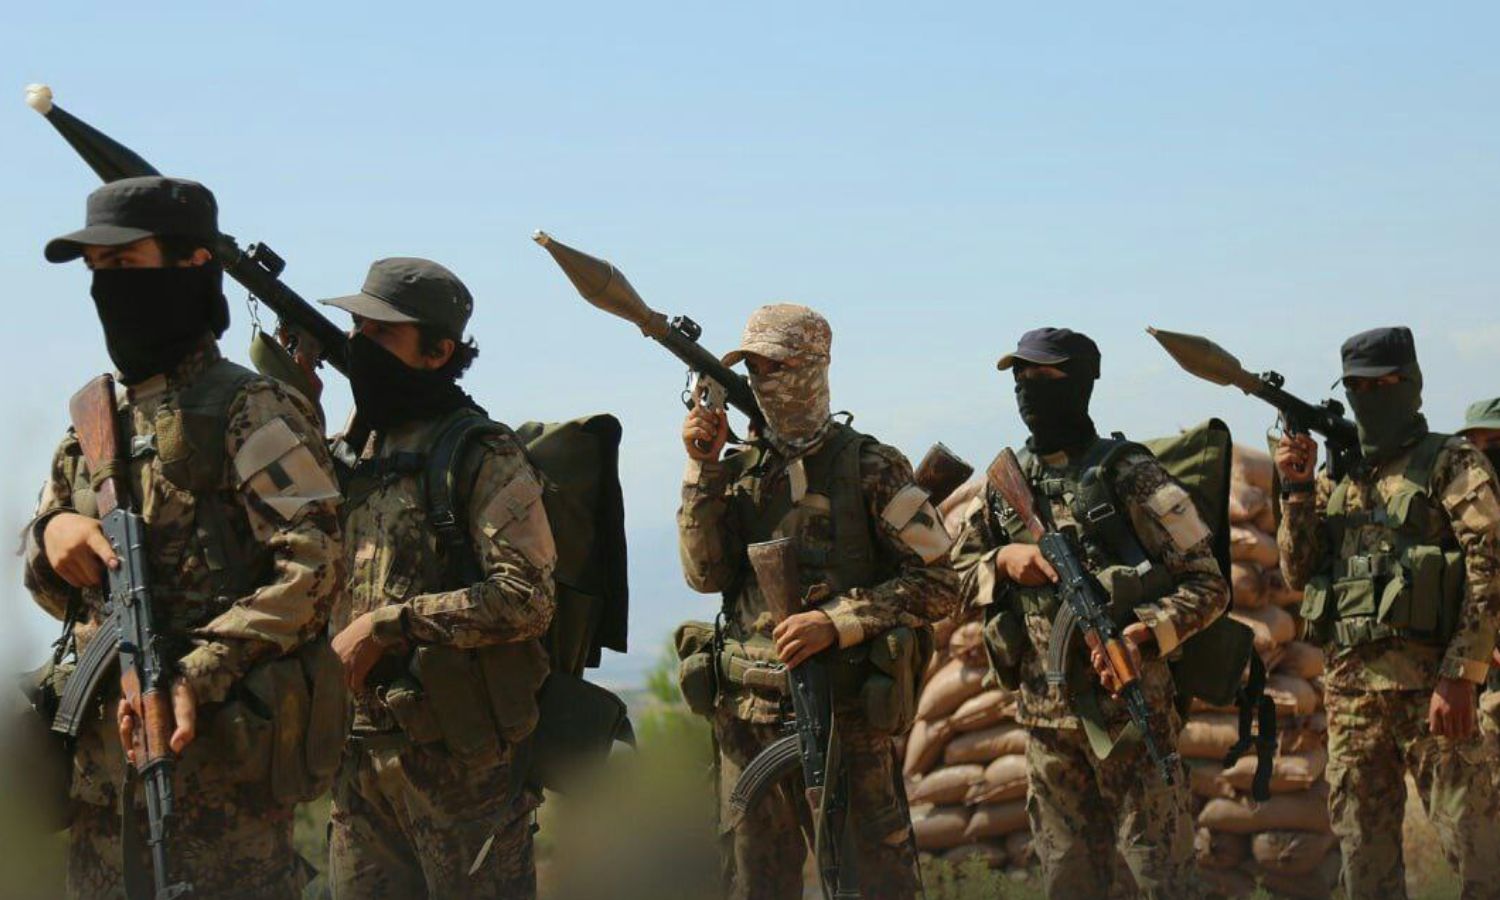 مقاتلون في "هيئة تحرير الشام" خلال دورة رماية قاذف "RPG"- آب 2022 (أمجاد)